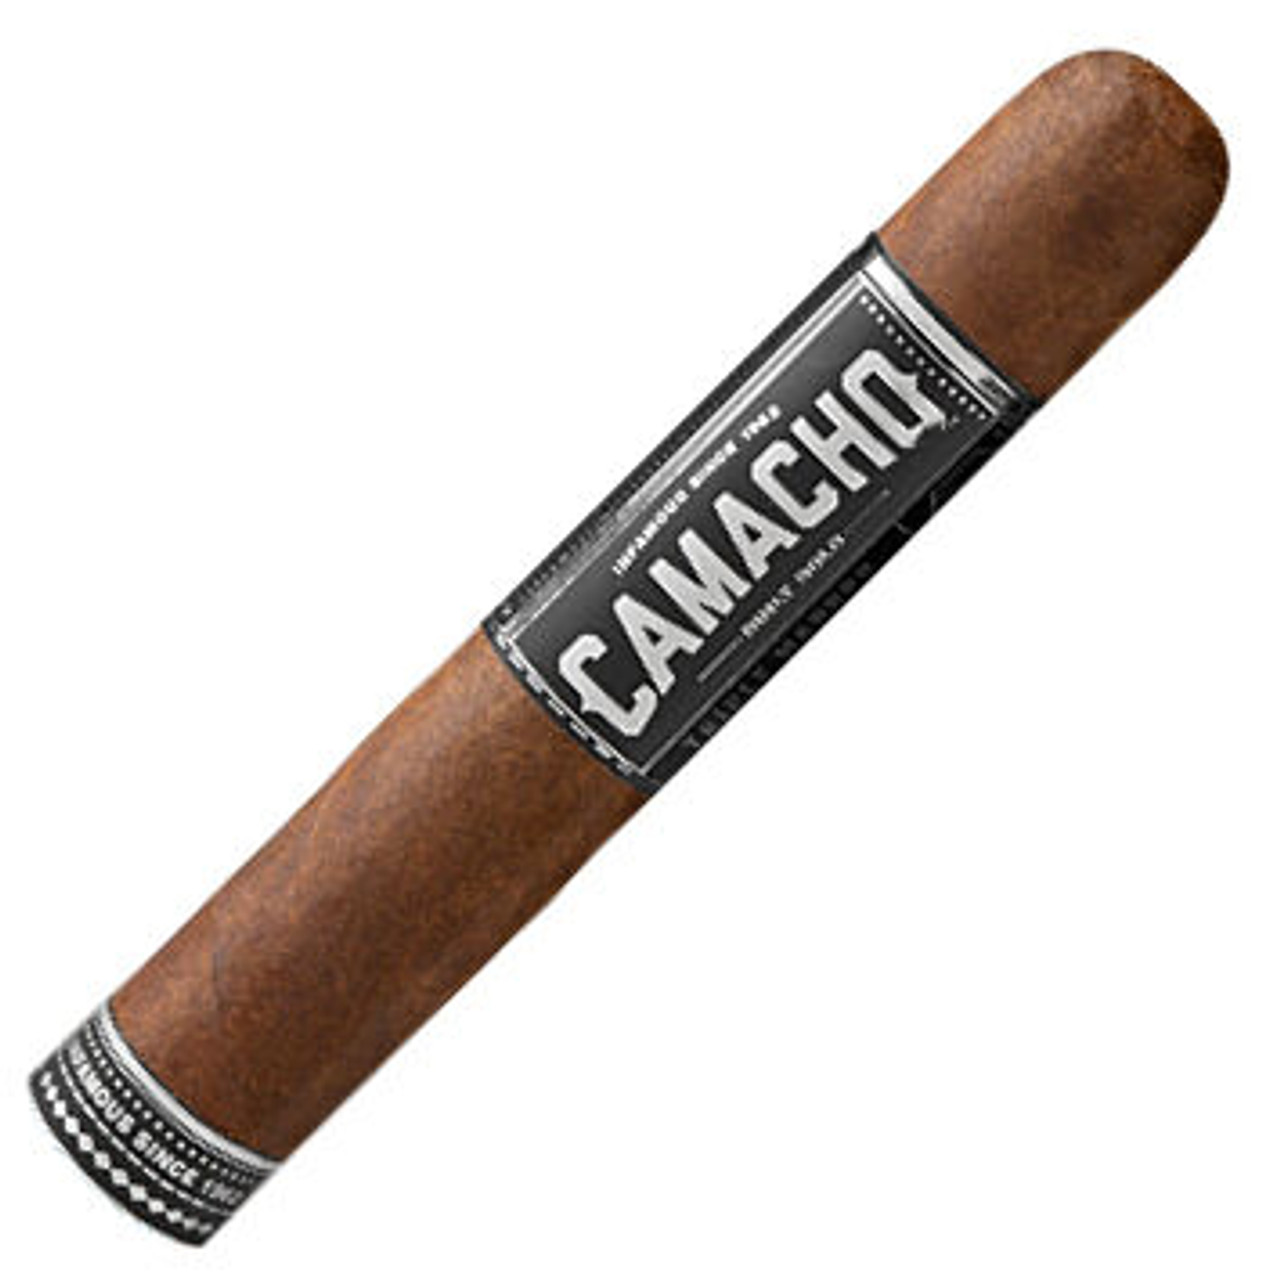 Camacho Triple Maduro 60x6 Cigars - 6 x 60 Single